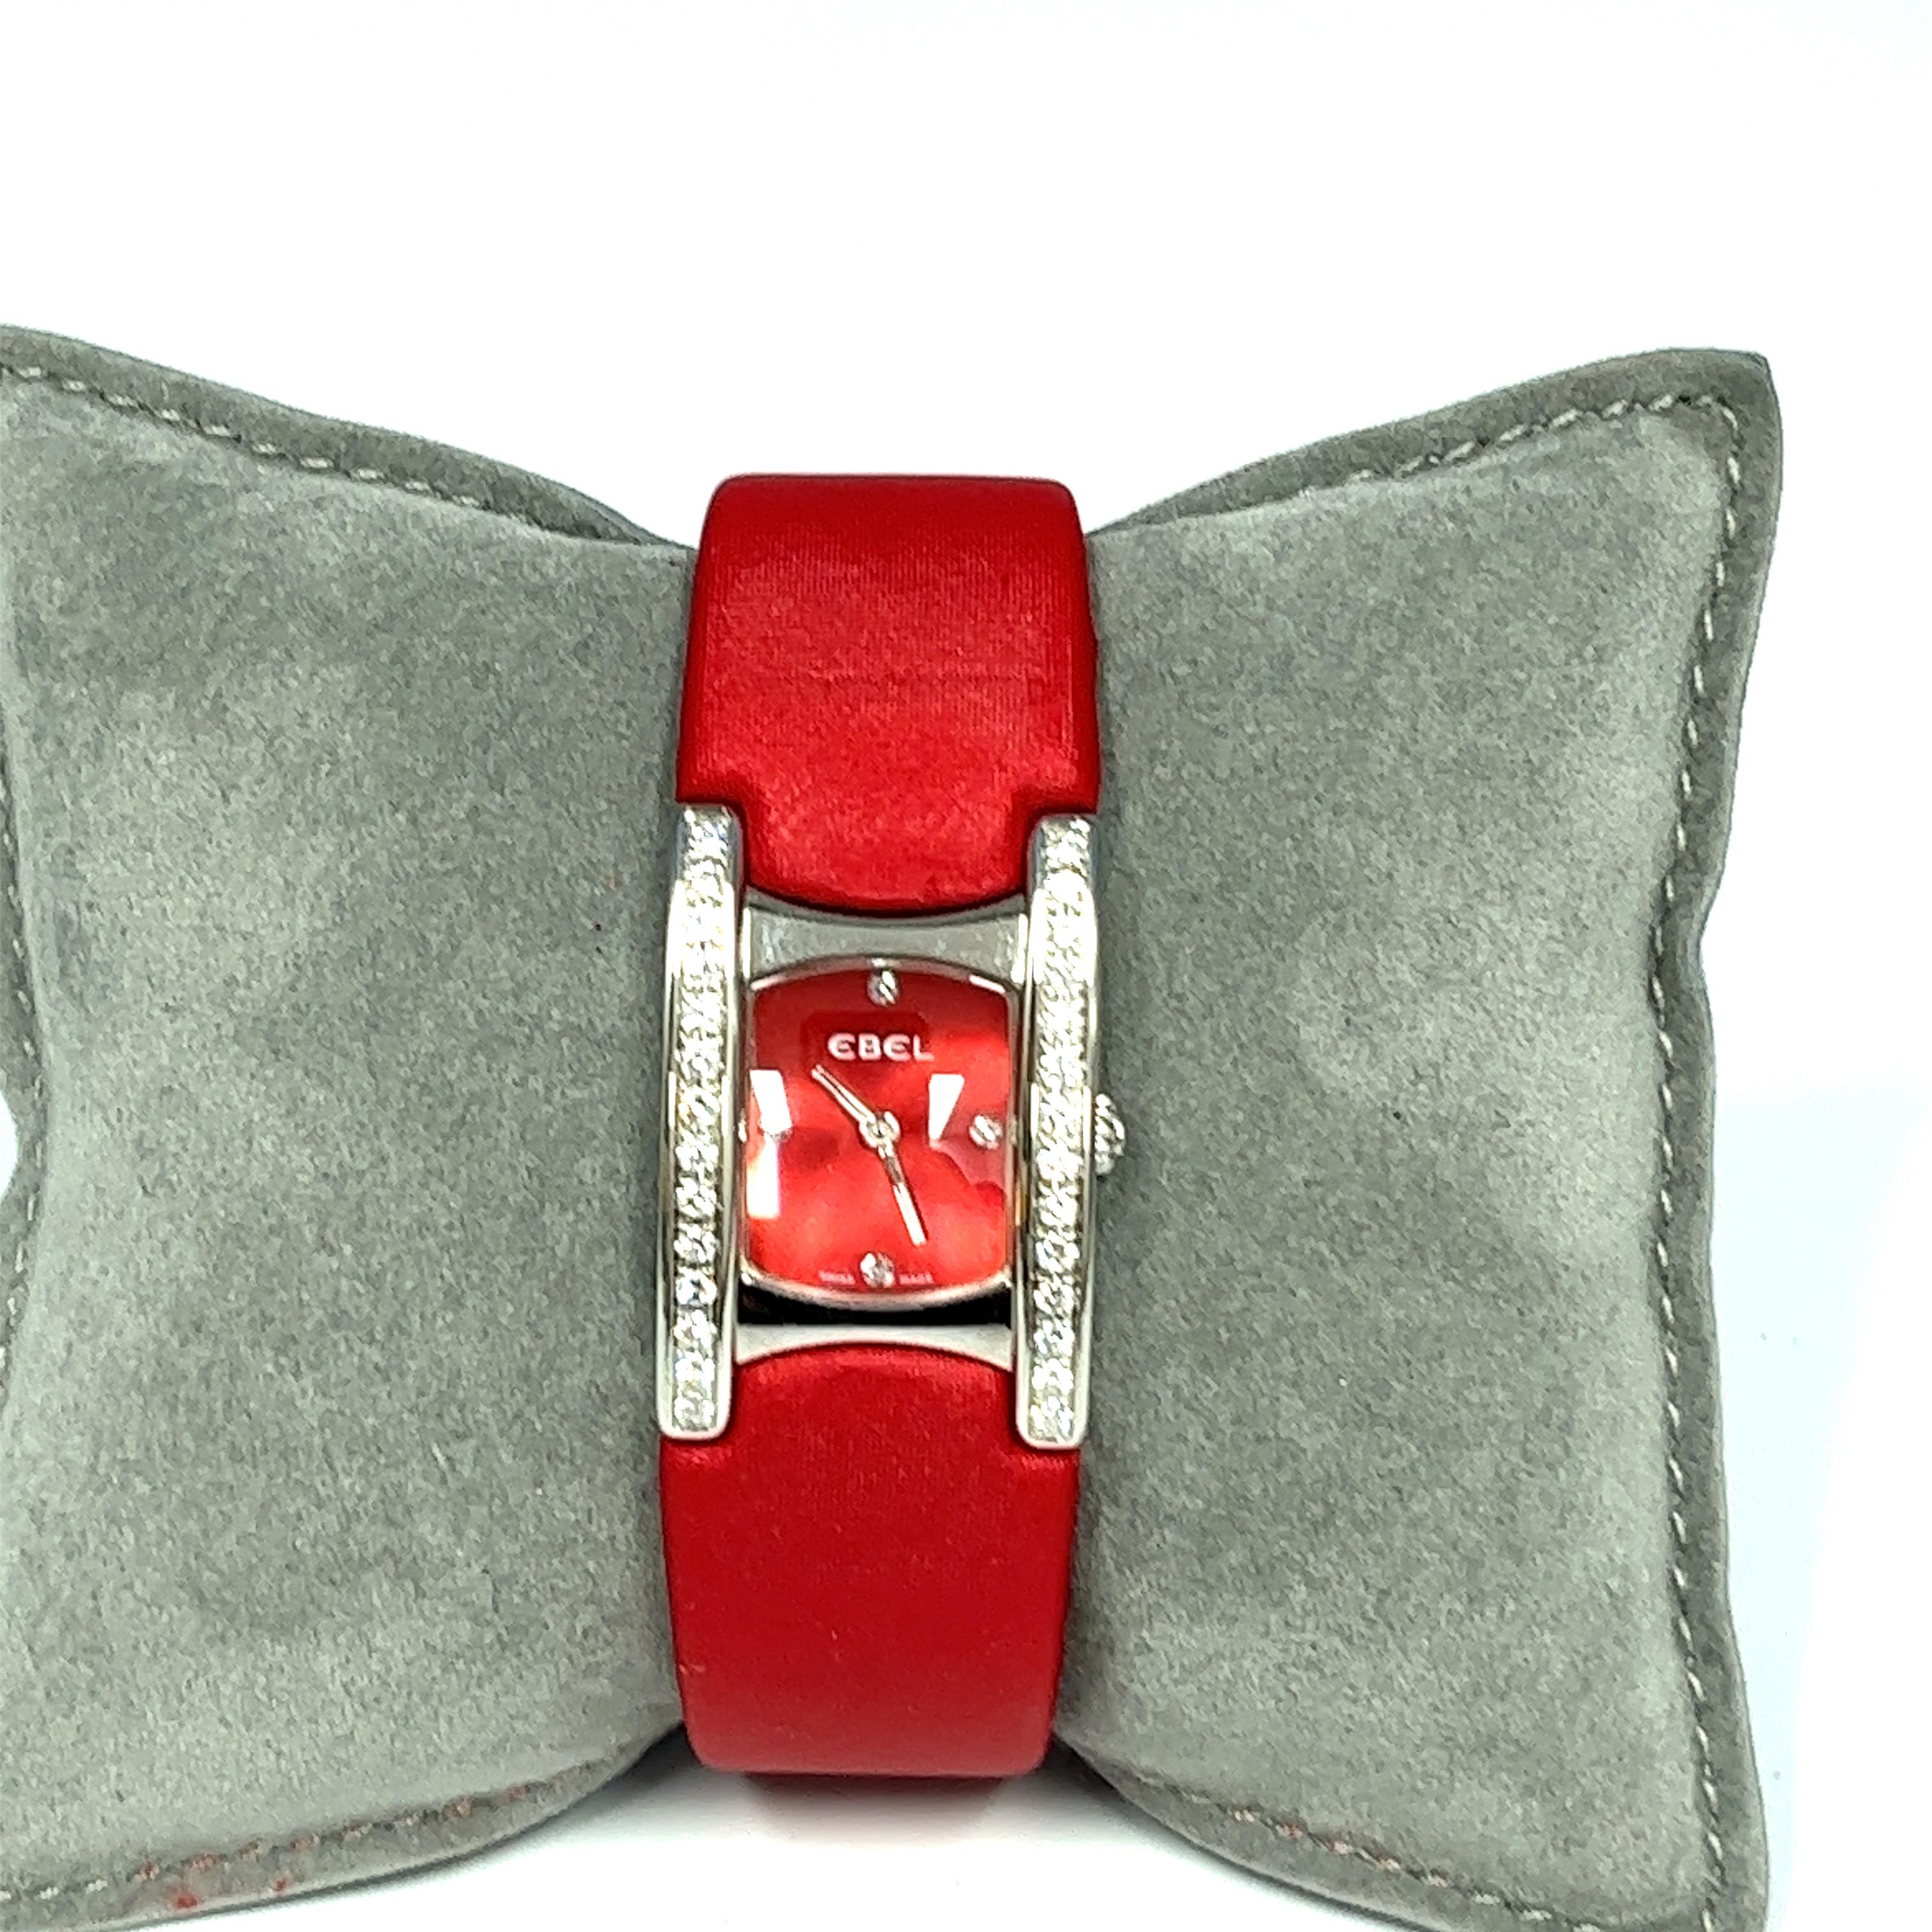 Ebel ist ein Schweizer Luxusuhrenhersteller und wurde 1911 in der Schweiz gegründet. Diese schöne Pre-Owned Ebel Beluga E 9057A28-10 hat ein Edelstahlgehäuse mit einem roten Zifferblatt. Sie hat Zeiger aus Edelstahl und diamantbesetzte Ziffern bei